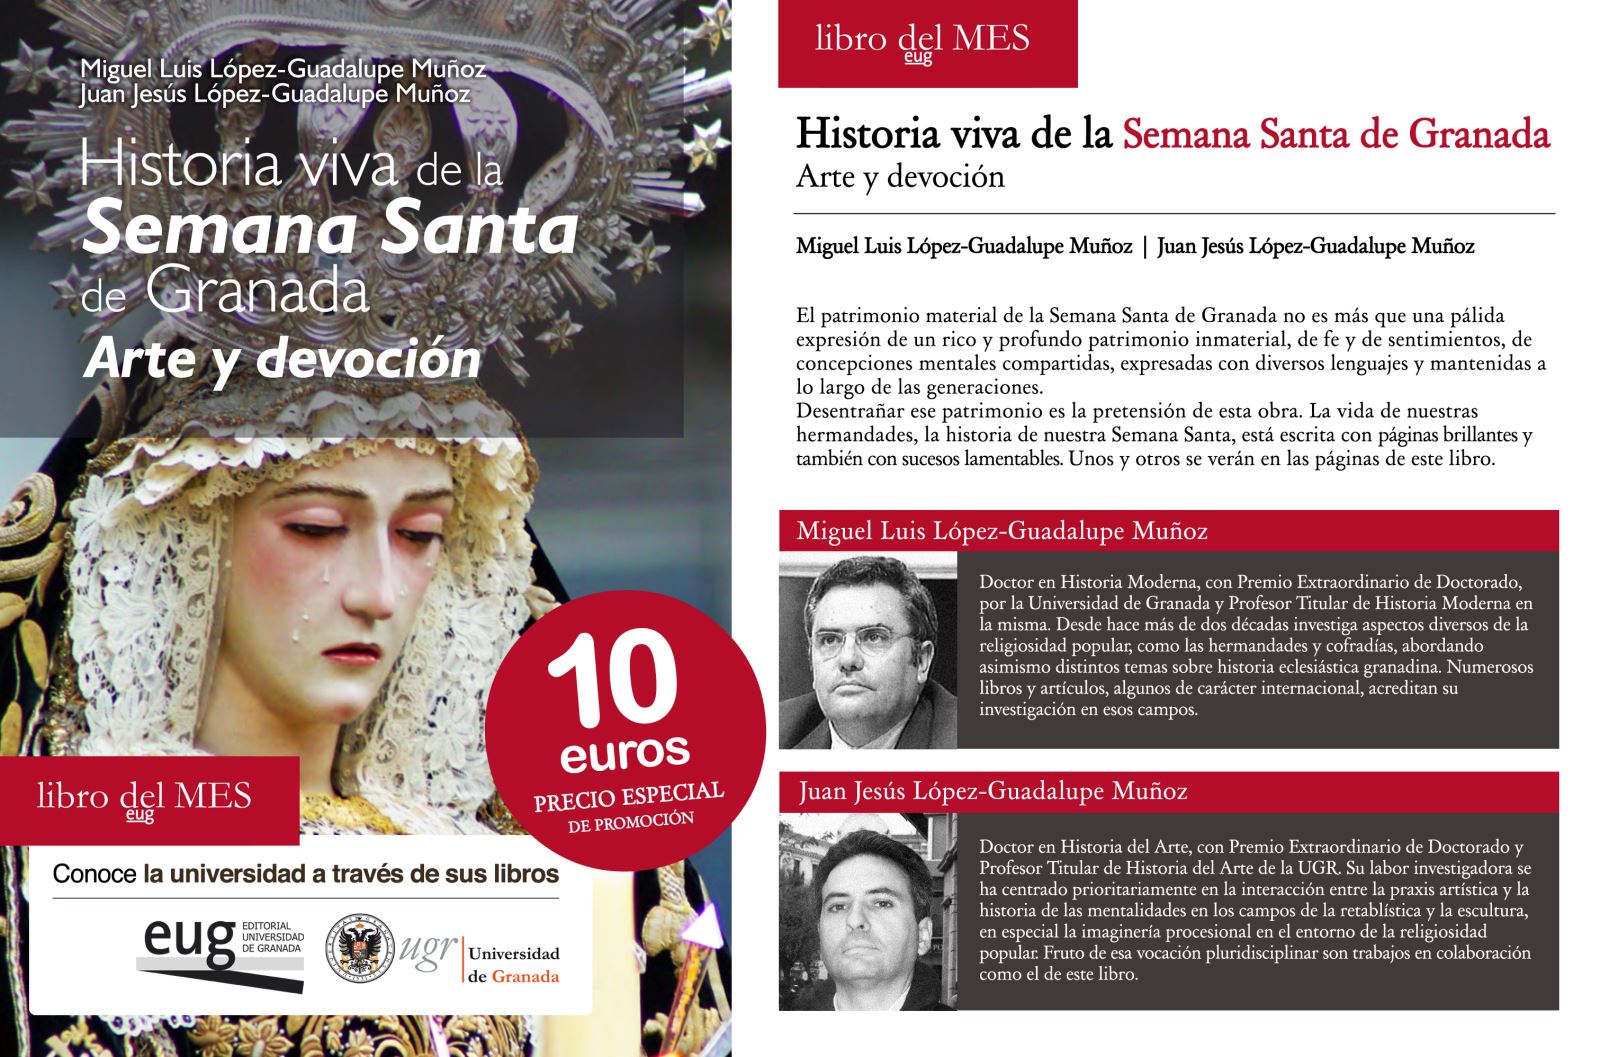 Historia viva de la Semana Santa de Granada. Arte y devoción